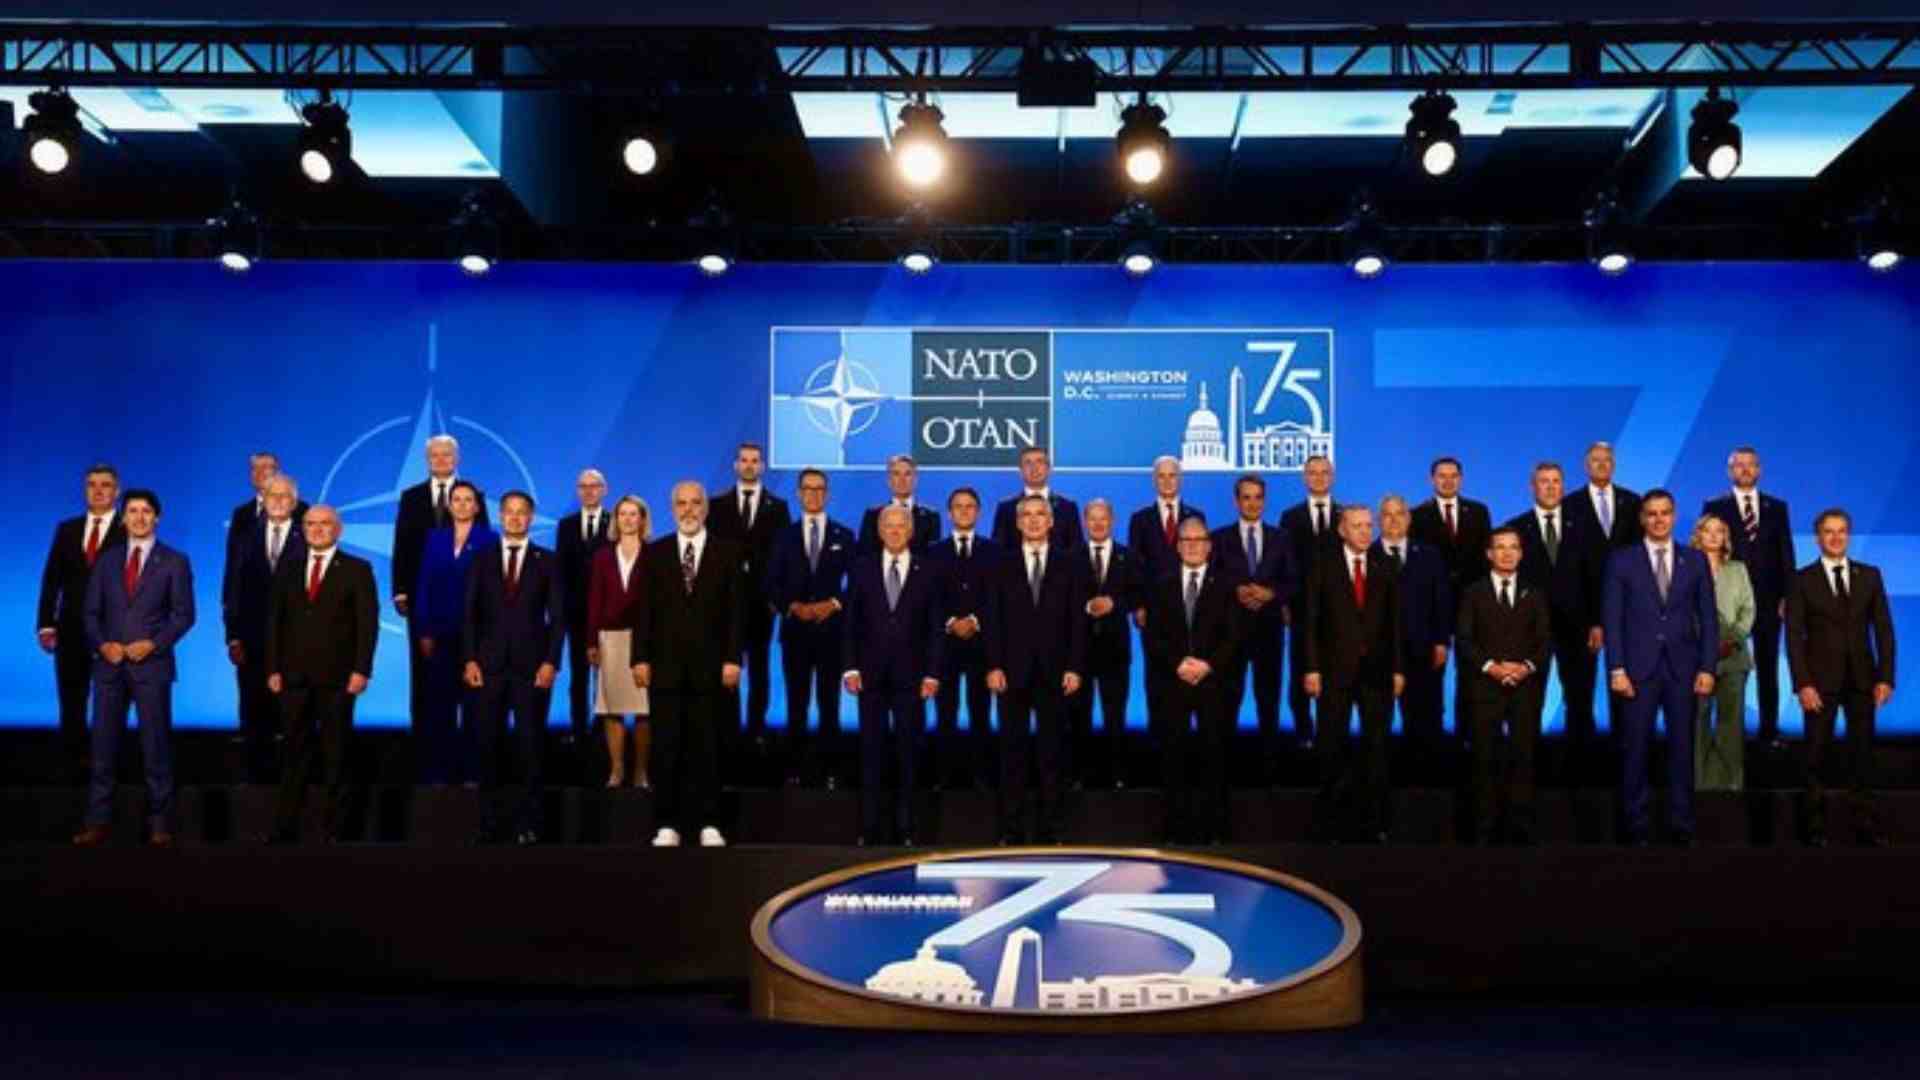 NATO Announces USD 43 Billion In Military Support For Ukraine